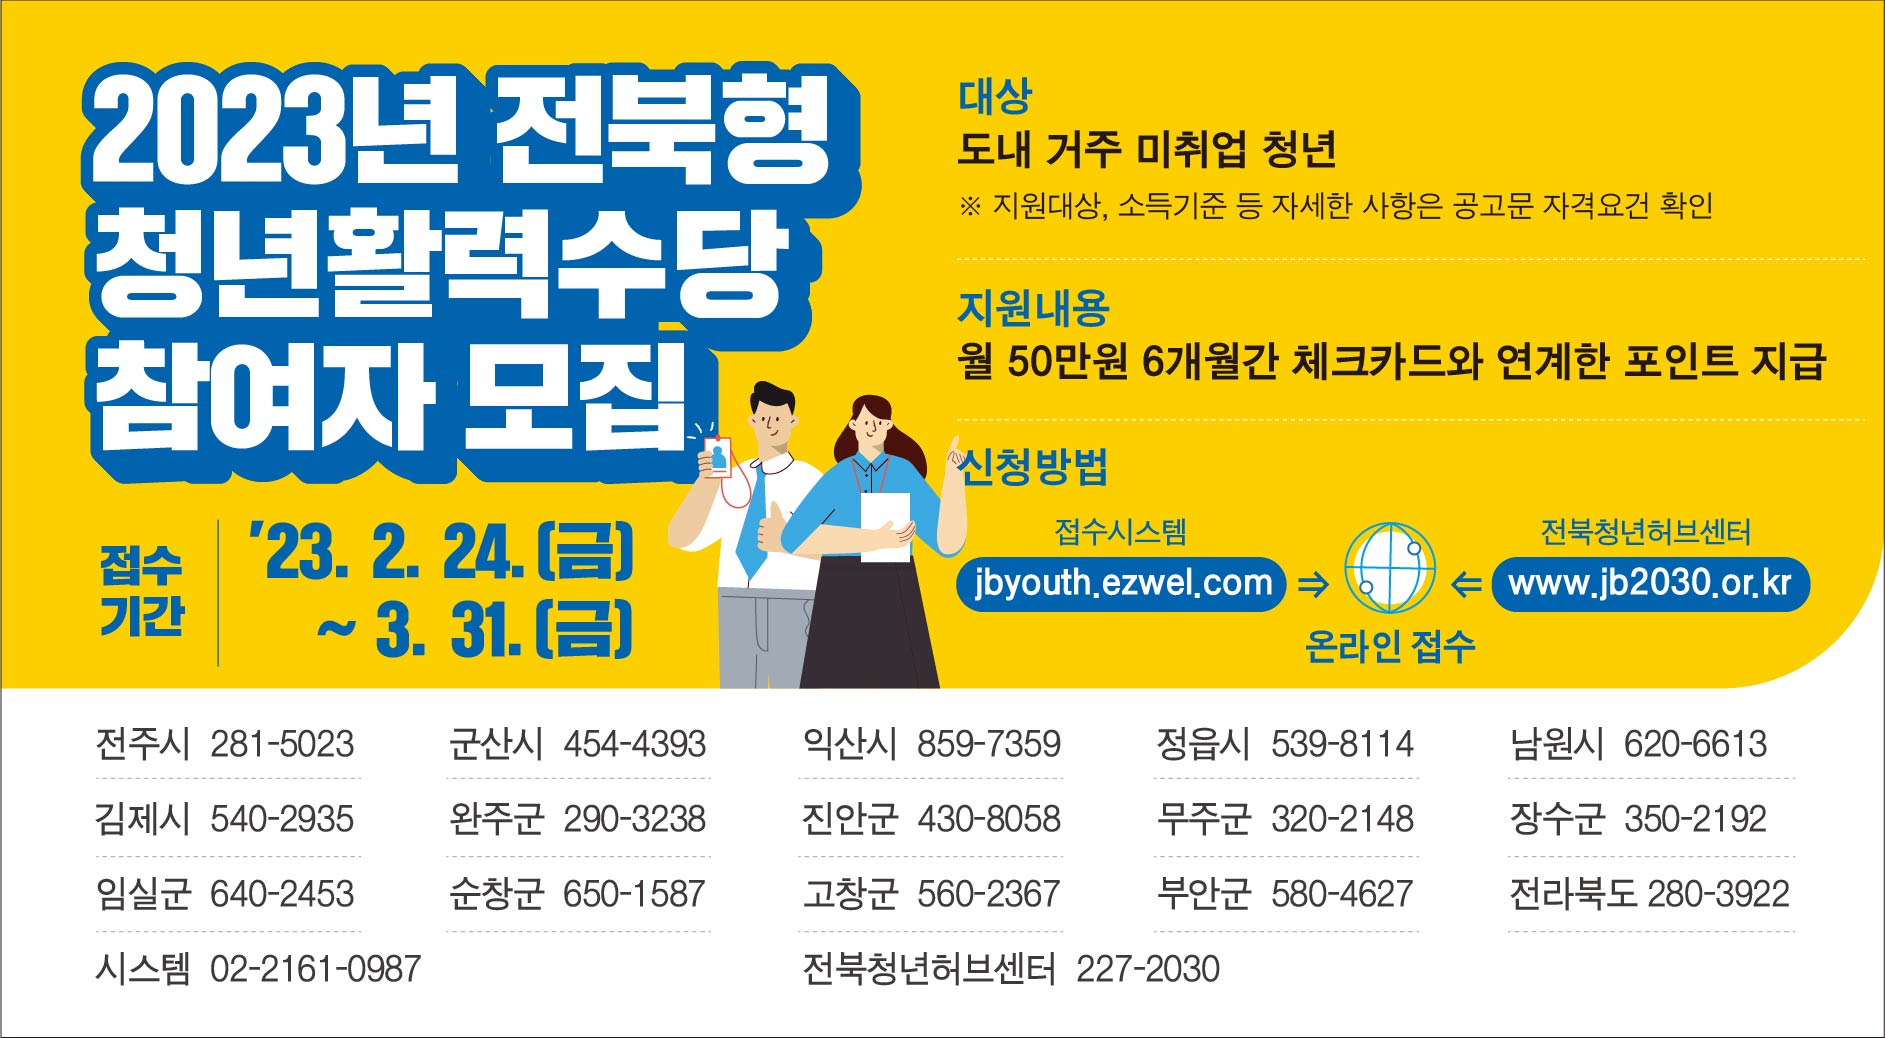 「2023년 전북형 청년활력수당 지원사업」공고 안내 및 홍보 협조 사진